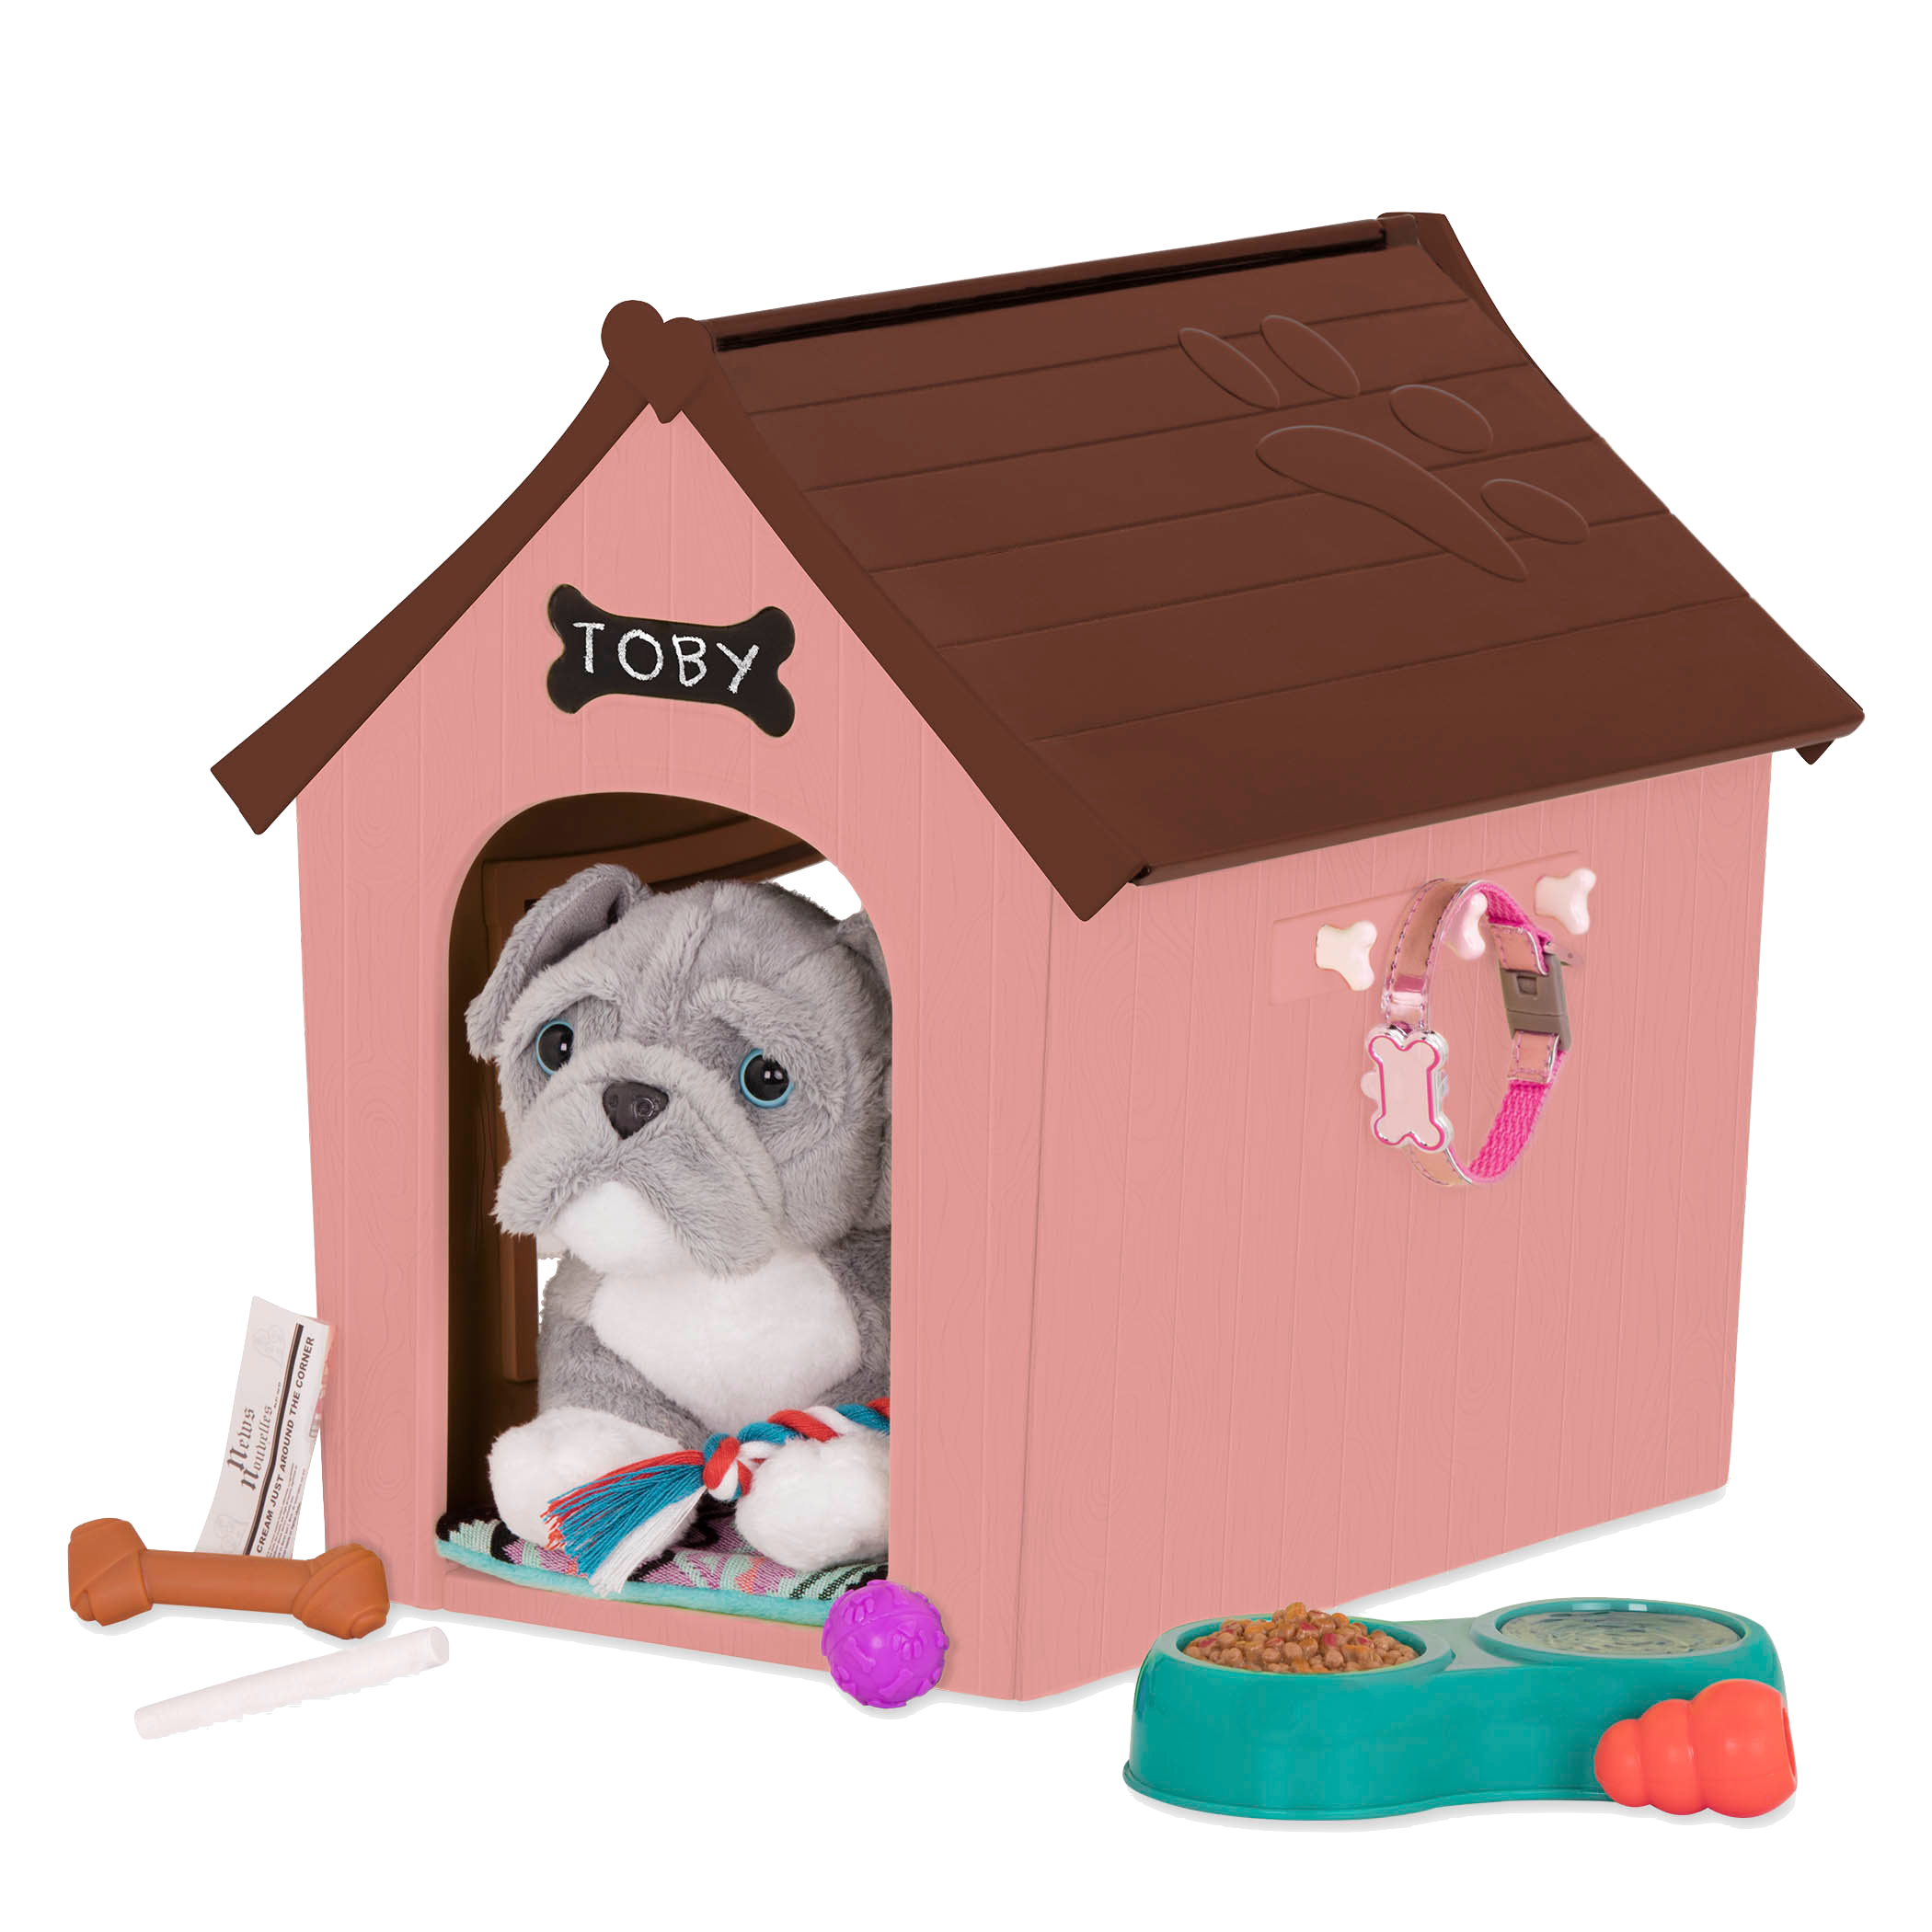 Pitbull plushie using dog house playset